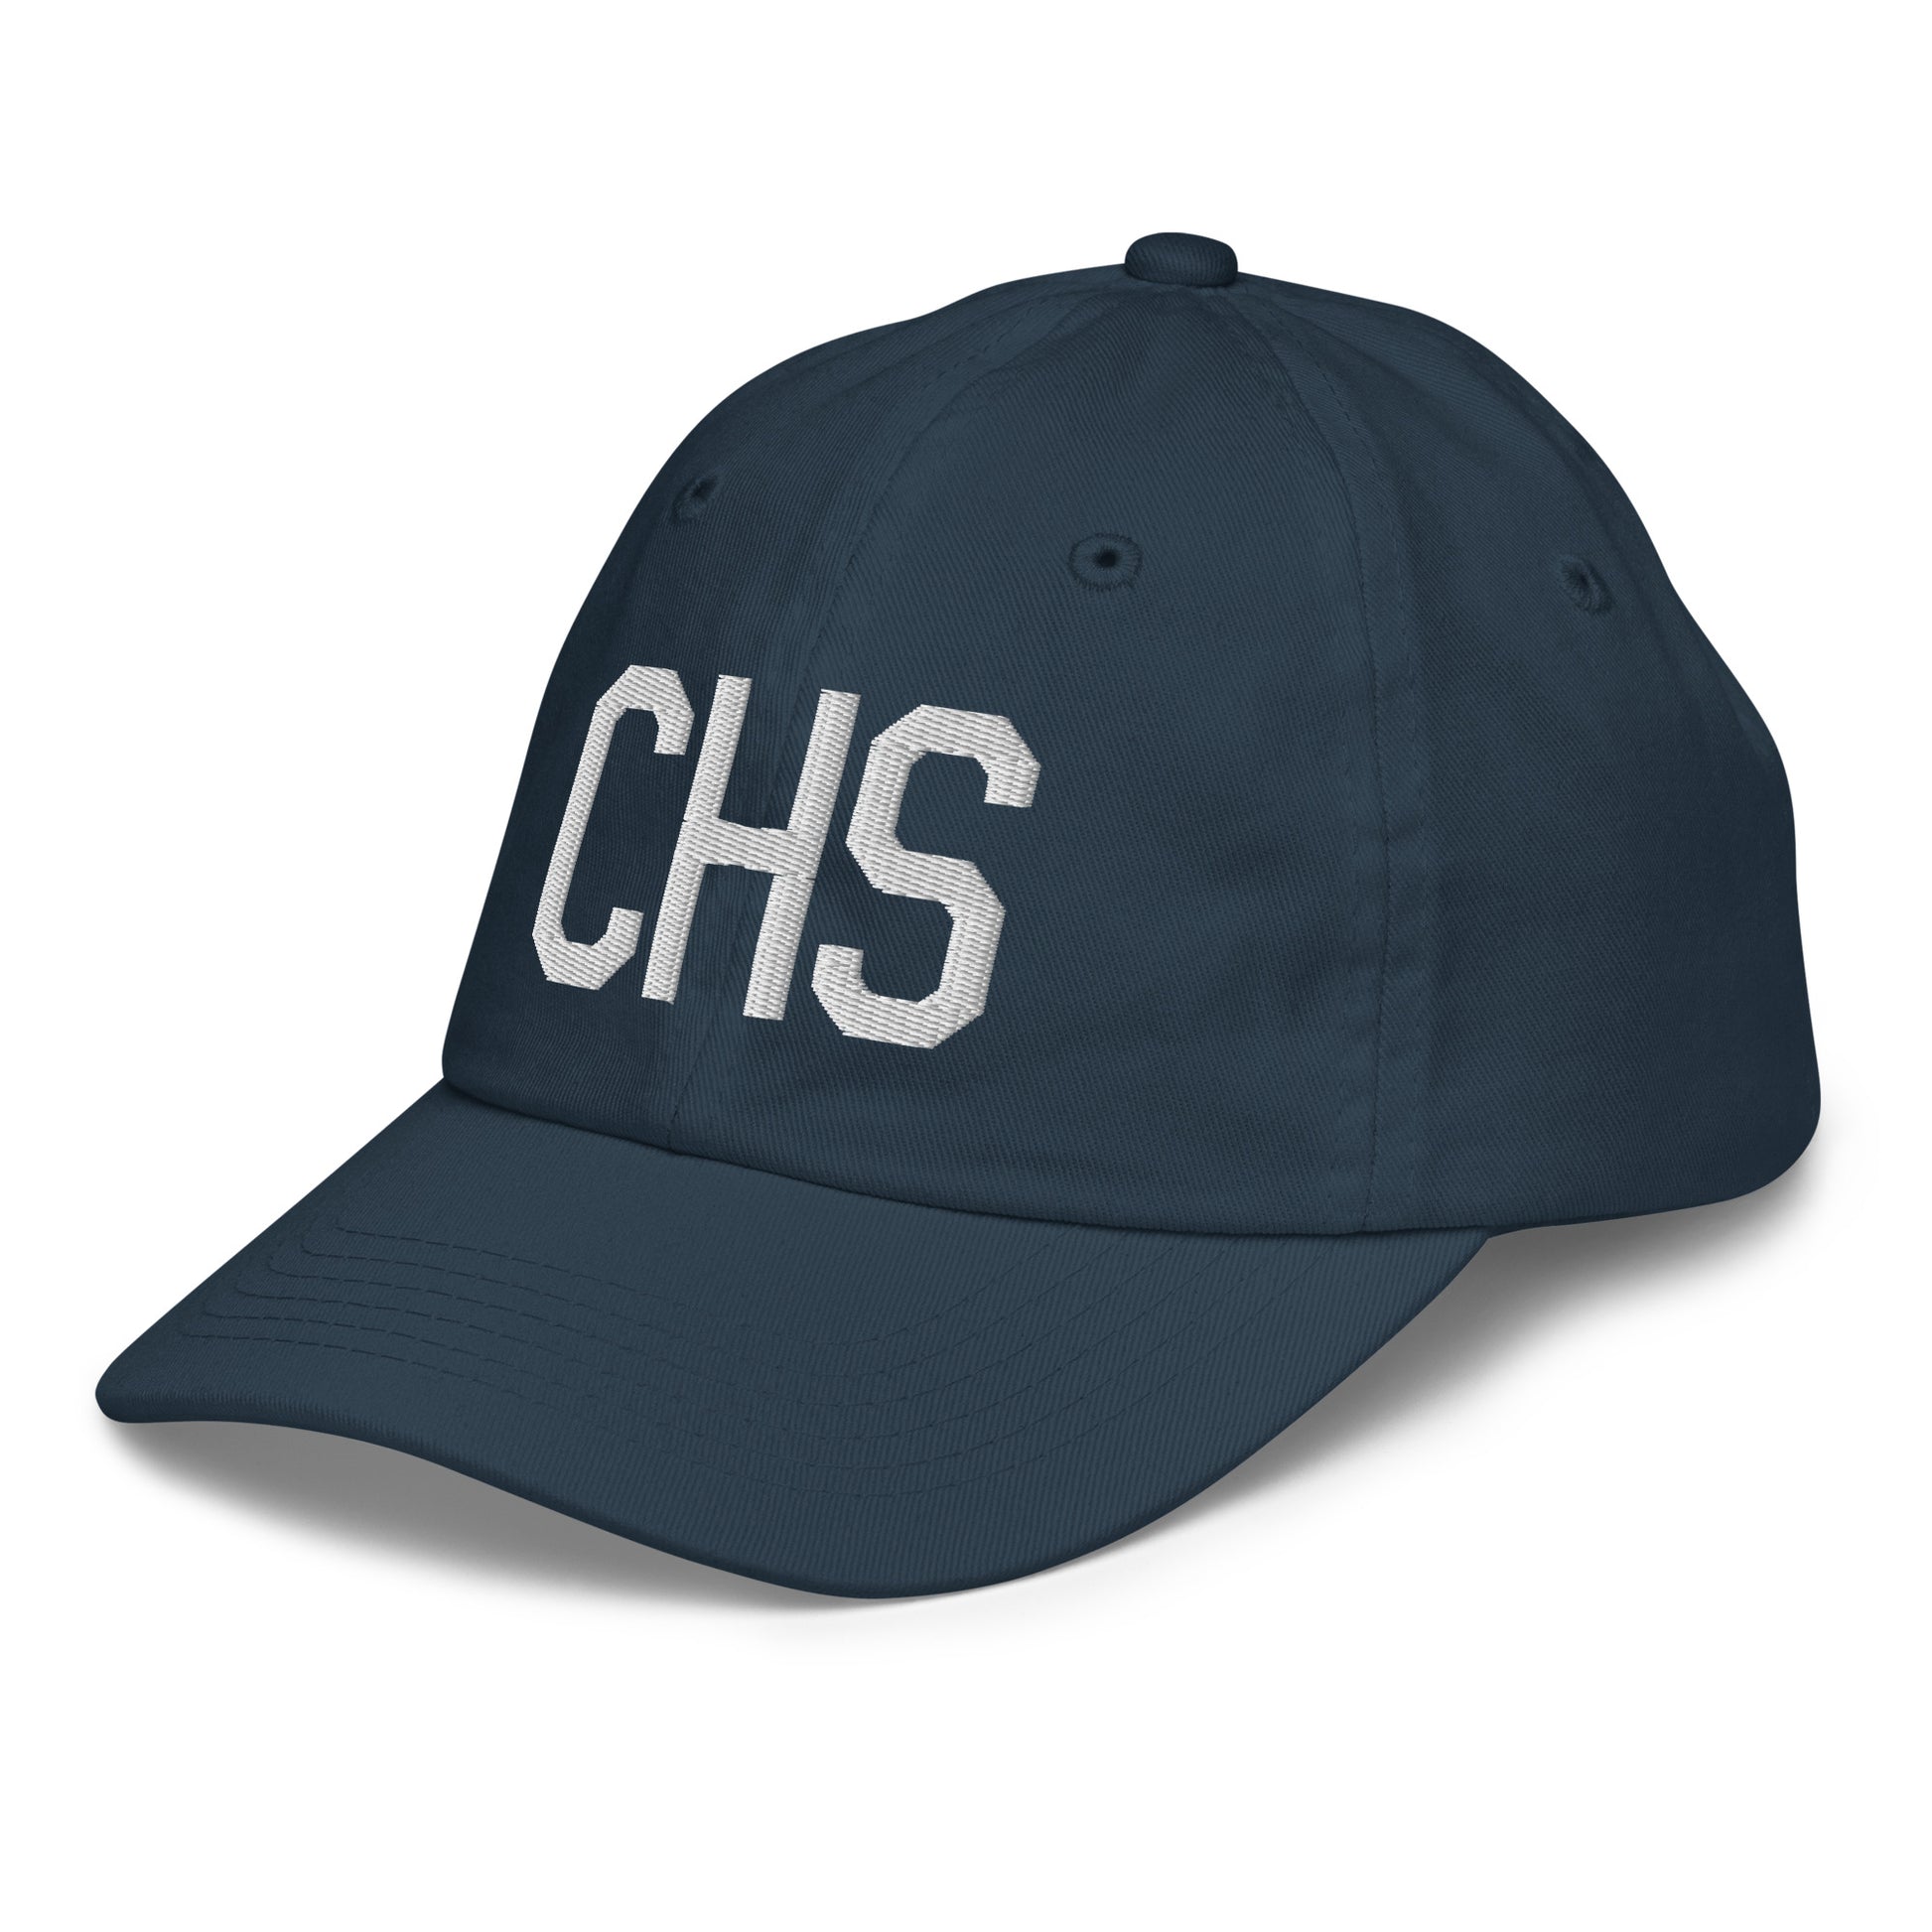 Airport Code Kid's Baseball Cap - White • CHS Charleston • YHM Designs - Image 16